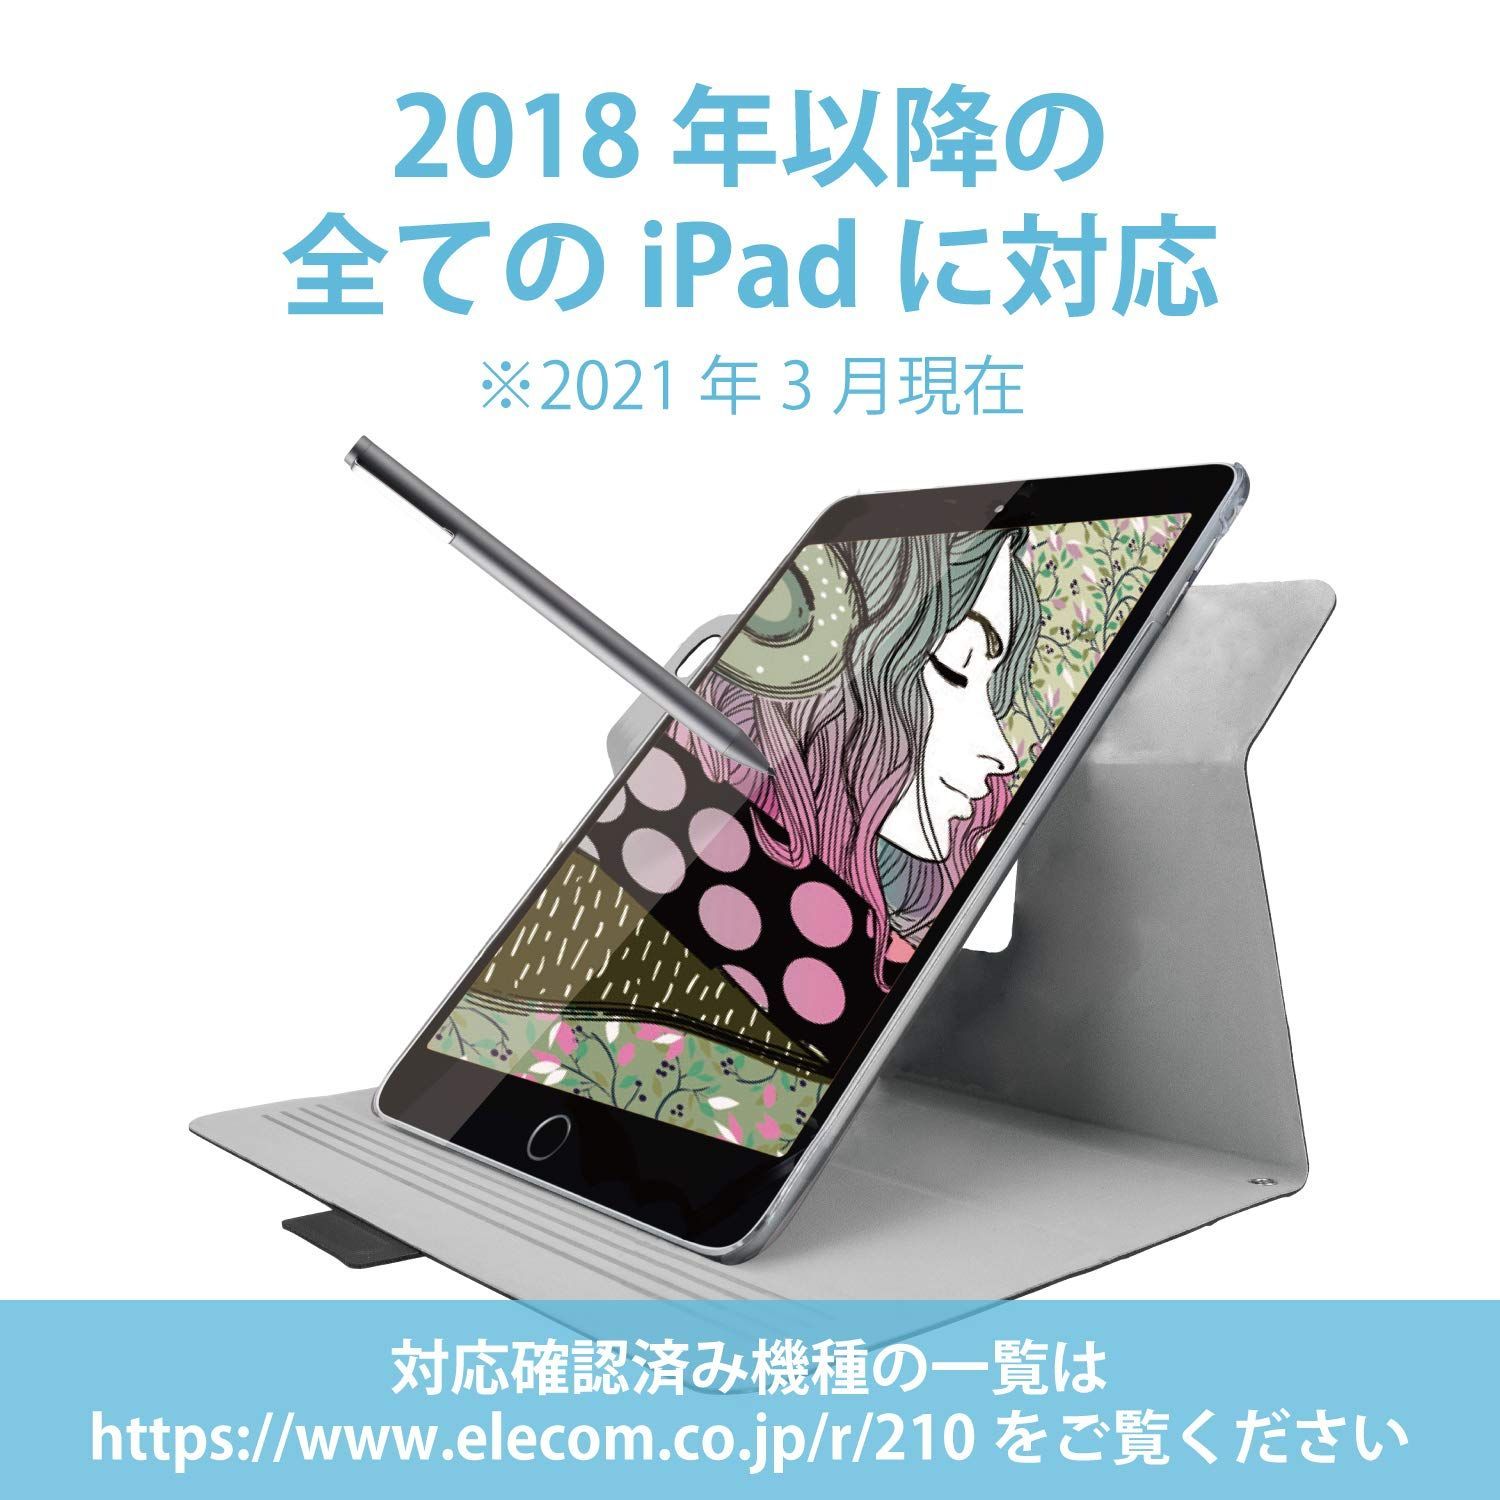 【特価セール】3本入り 交換ペン先 iPad専用モデル対応 アクティブタッチペン P-TIPACSTAP01 エレコム